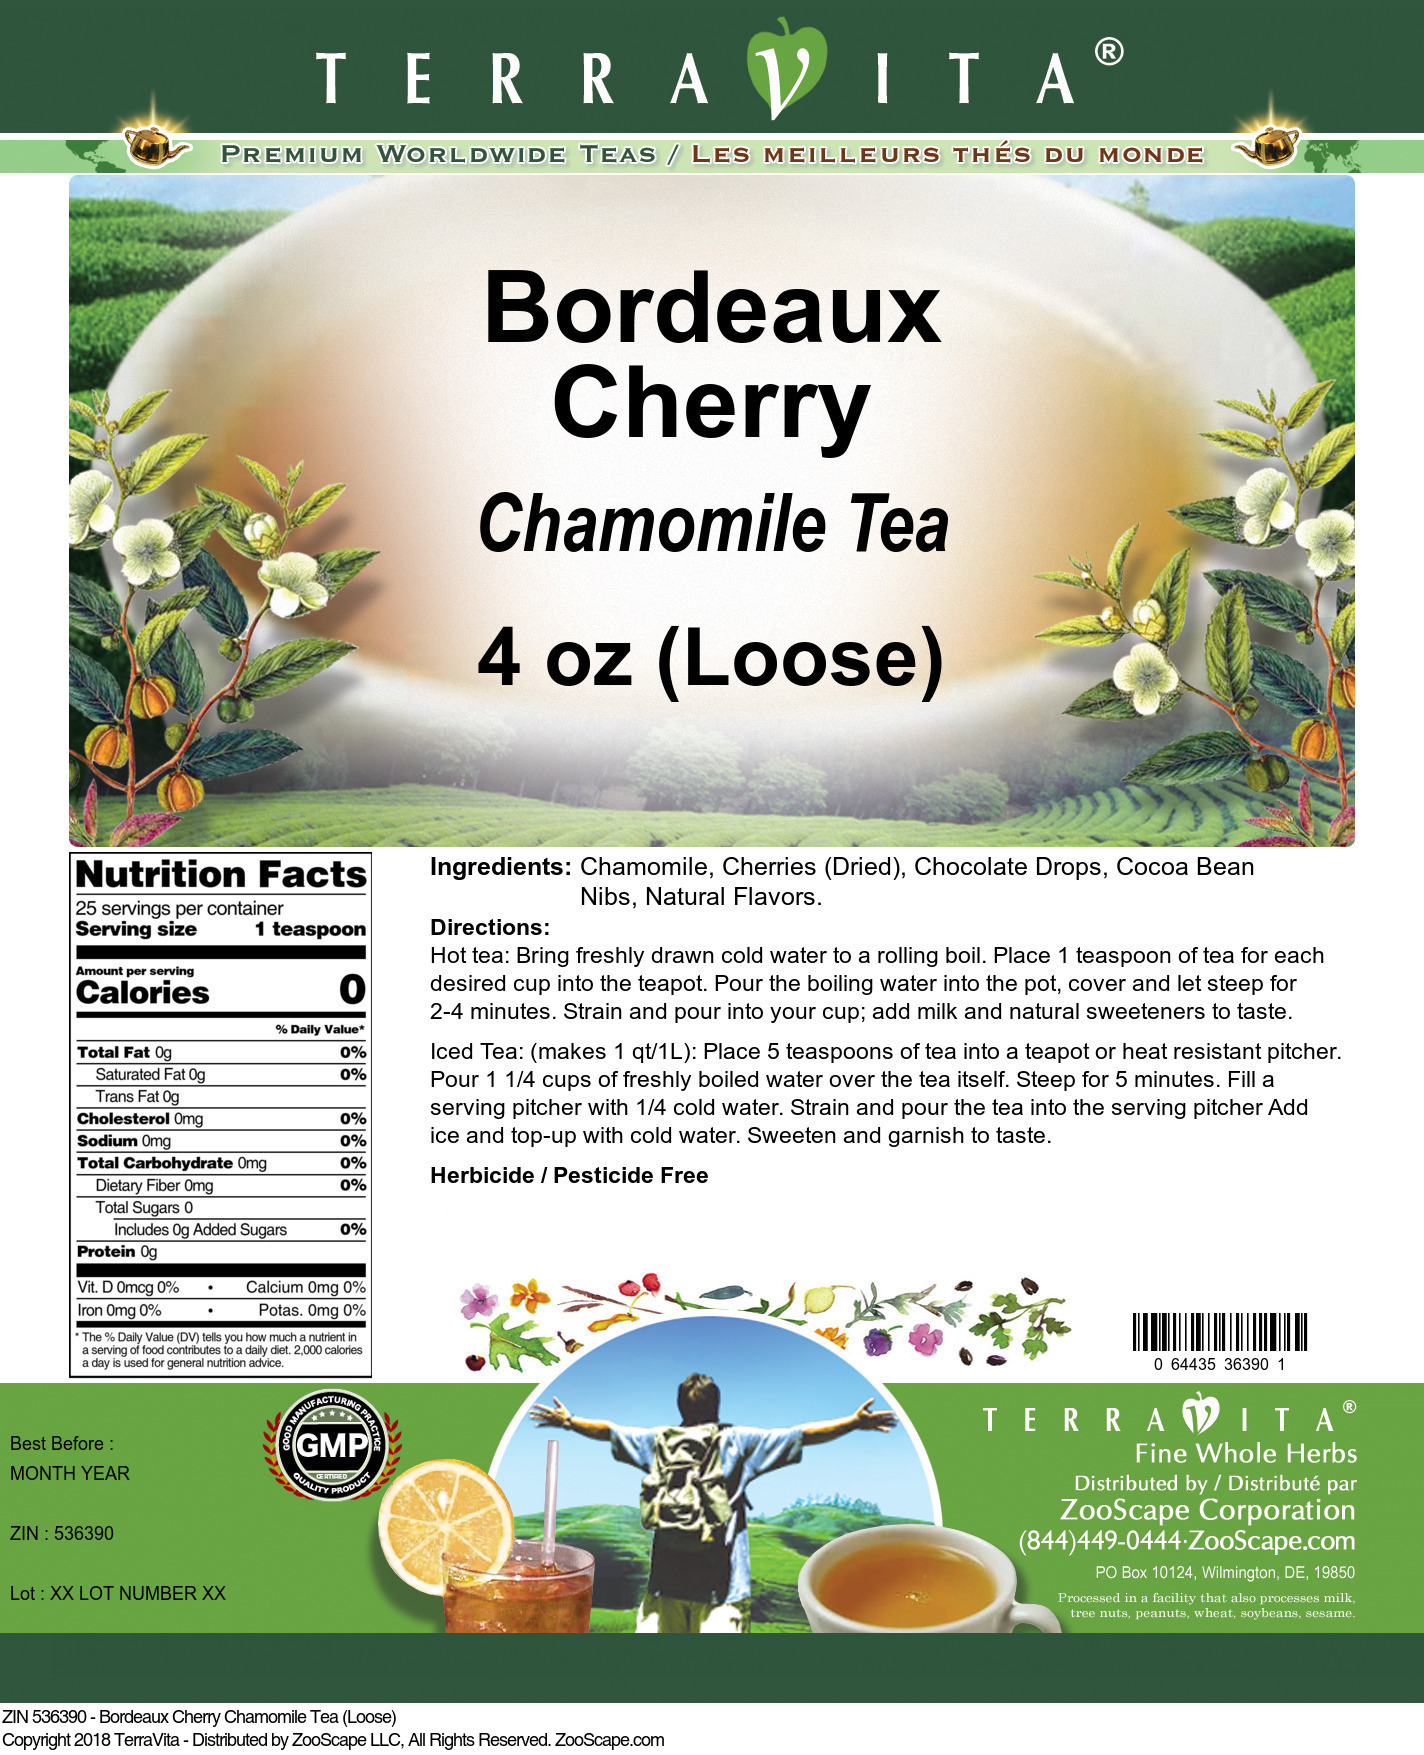 Bordeaux Cherry Chamomile Tea (Loose) - Label